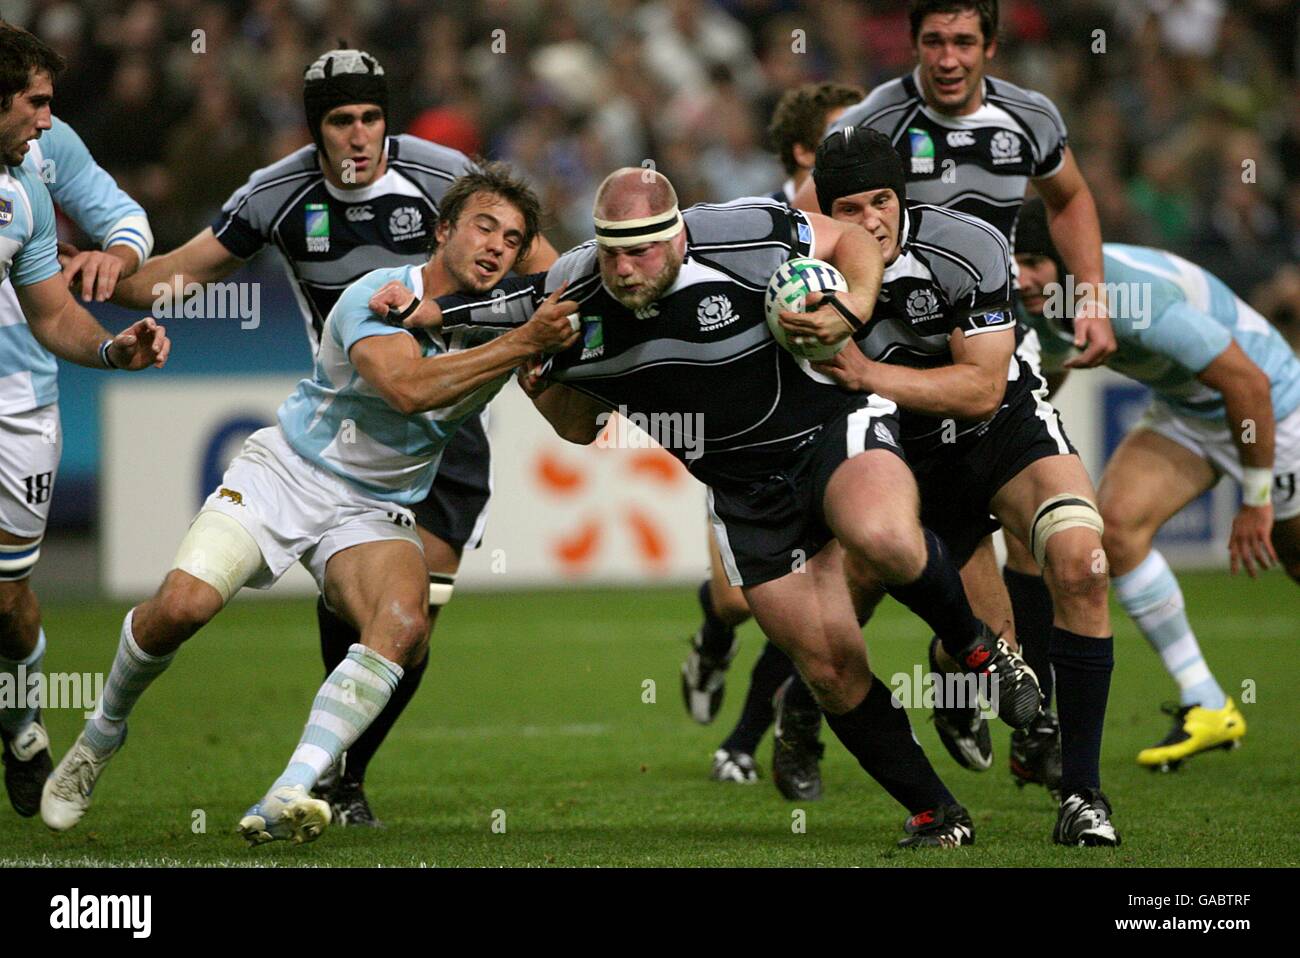 Rugby Union - IRB Coppa del mondo di Rugby 2007 - Quarter Final - Argentina / Scozia - Stade de France. Craig Smith della Scozia combatte la sua strada attraverso la difesa argentina. Foto Stock